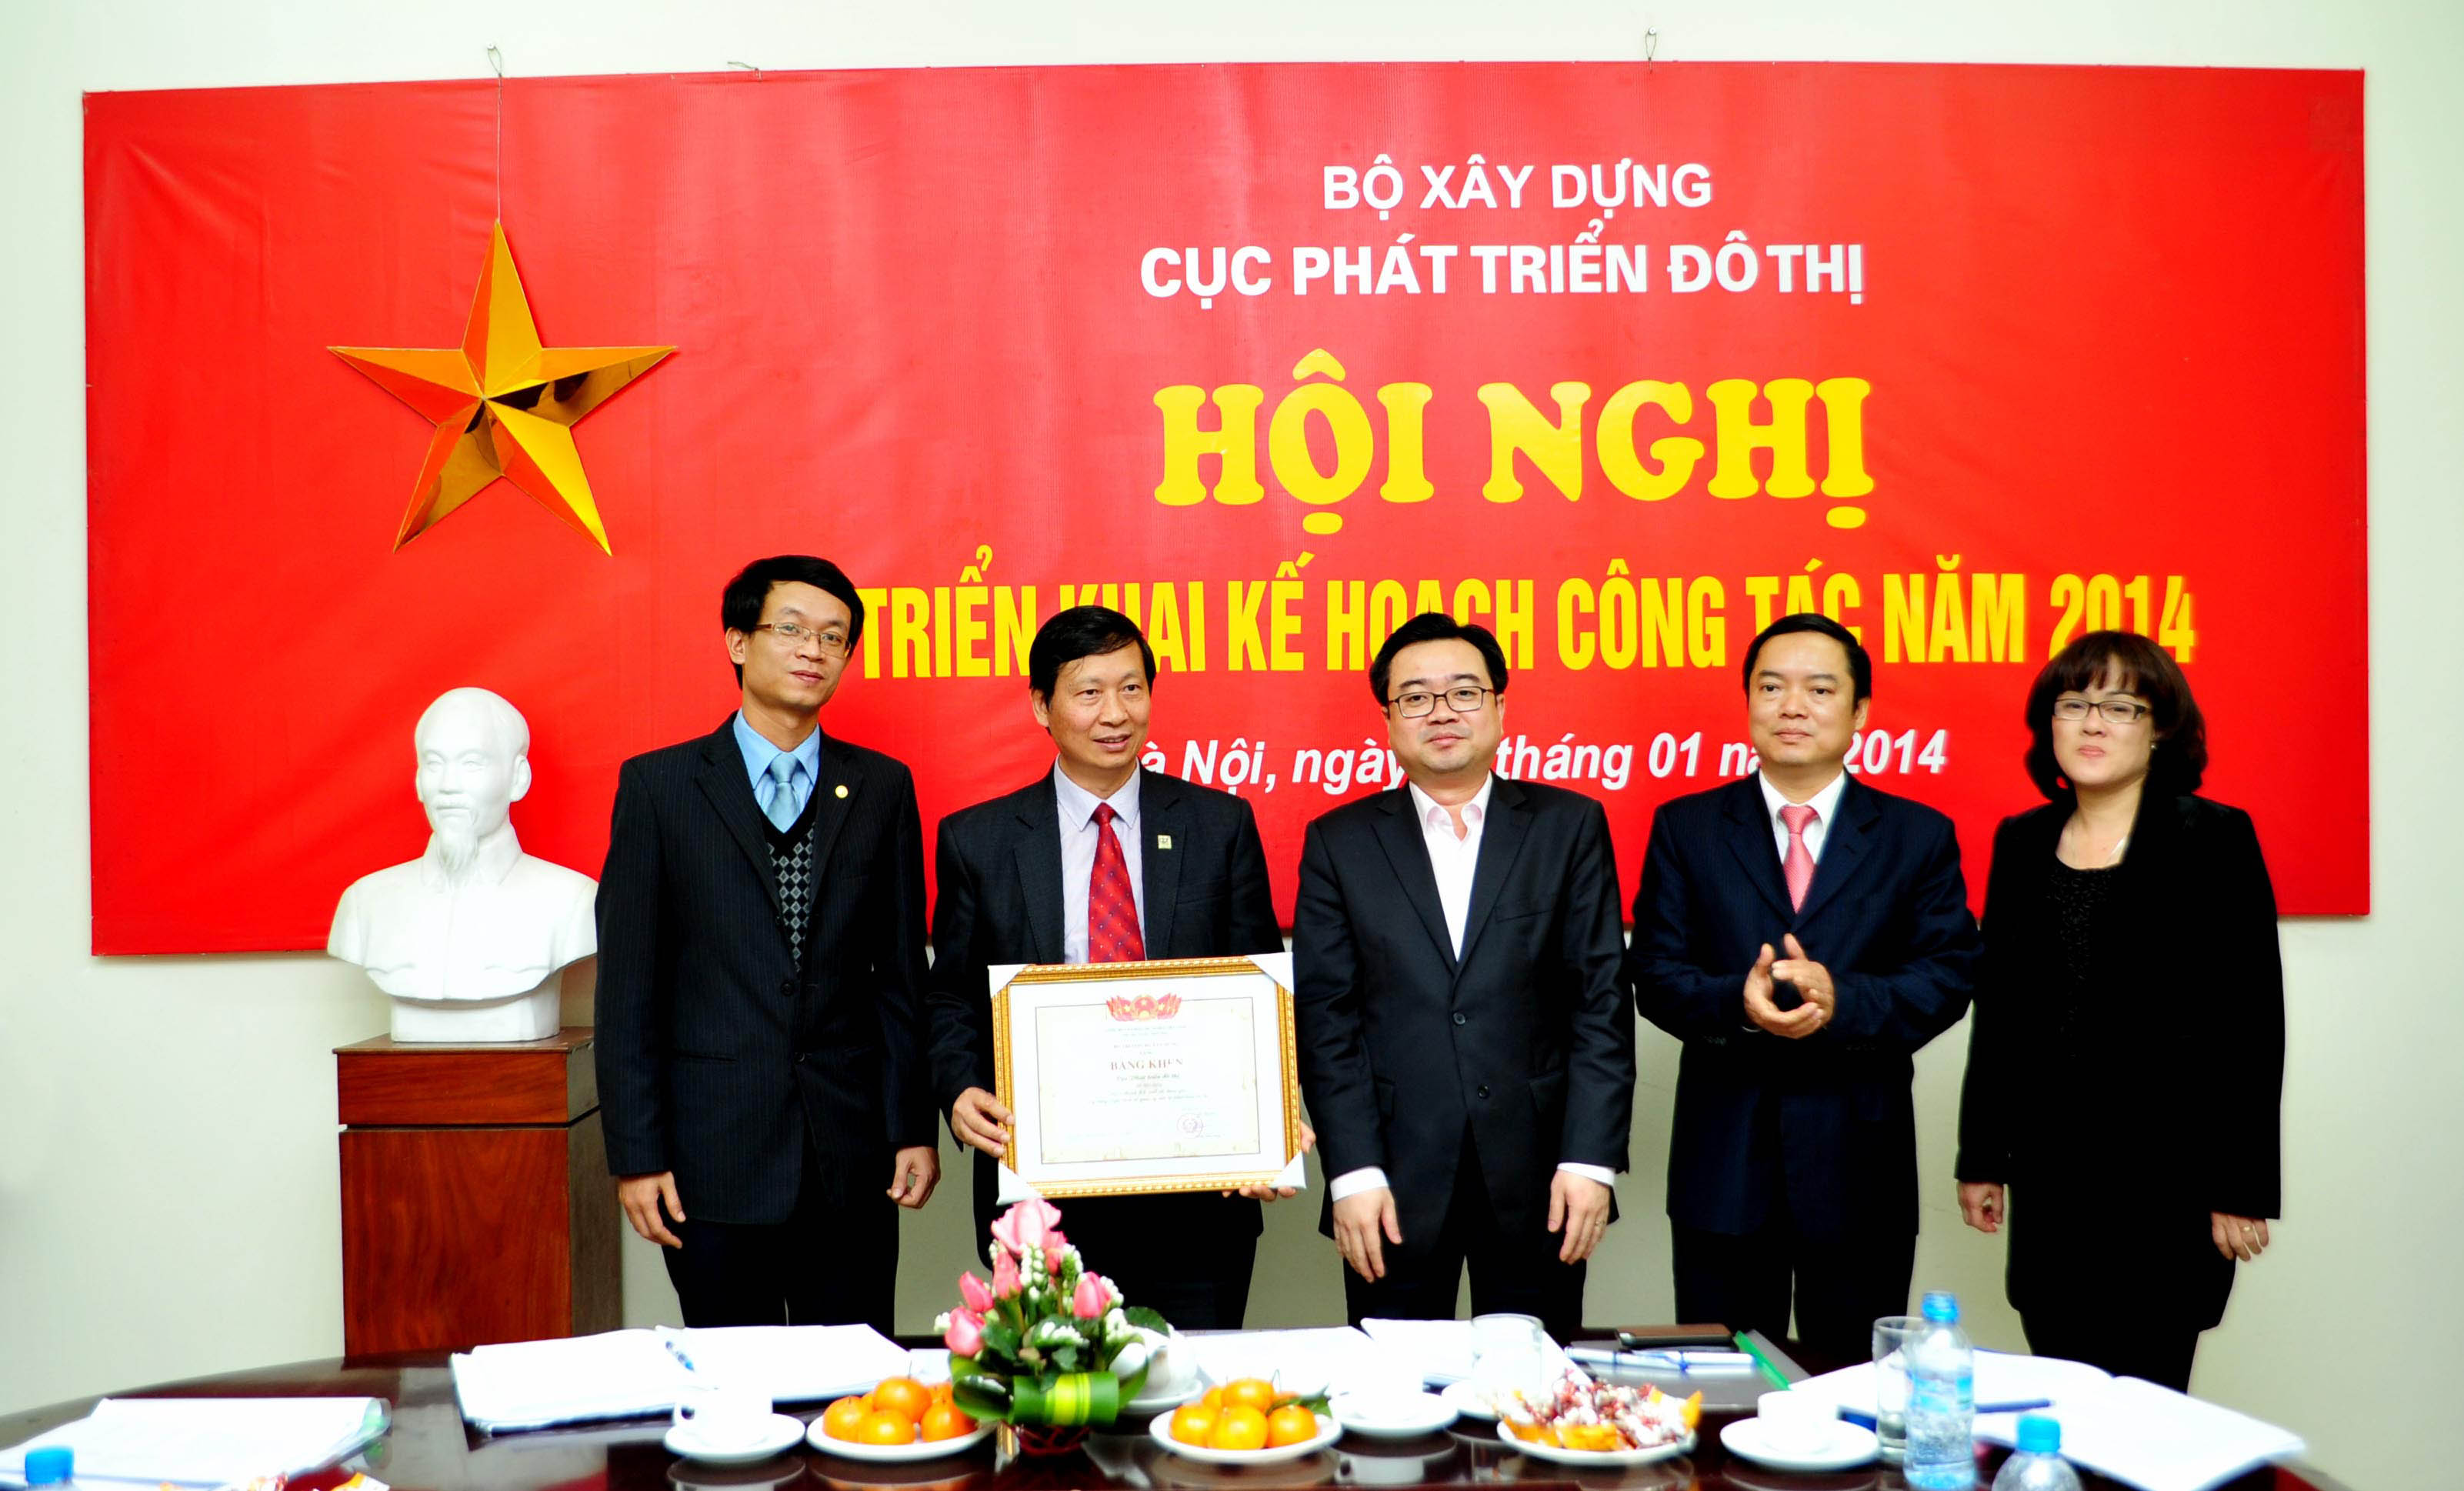 Thứ trưởng Bộ Xây dựng Nguyễn Thanh Nghị trao bằng khen cho Lãnh đạo Cục Phát triển đô thị